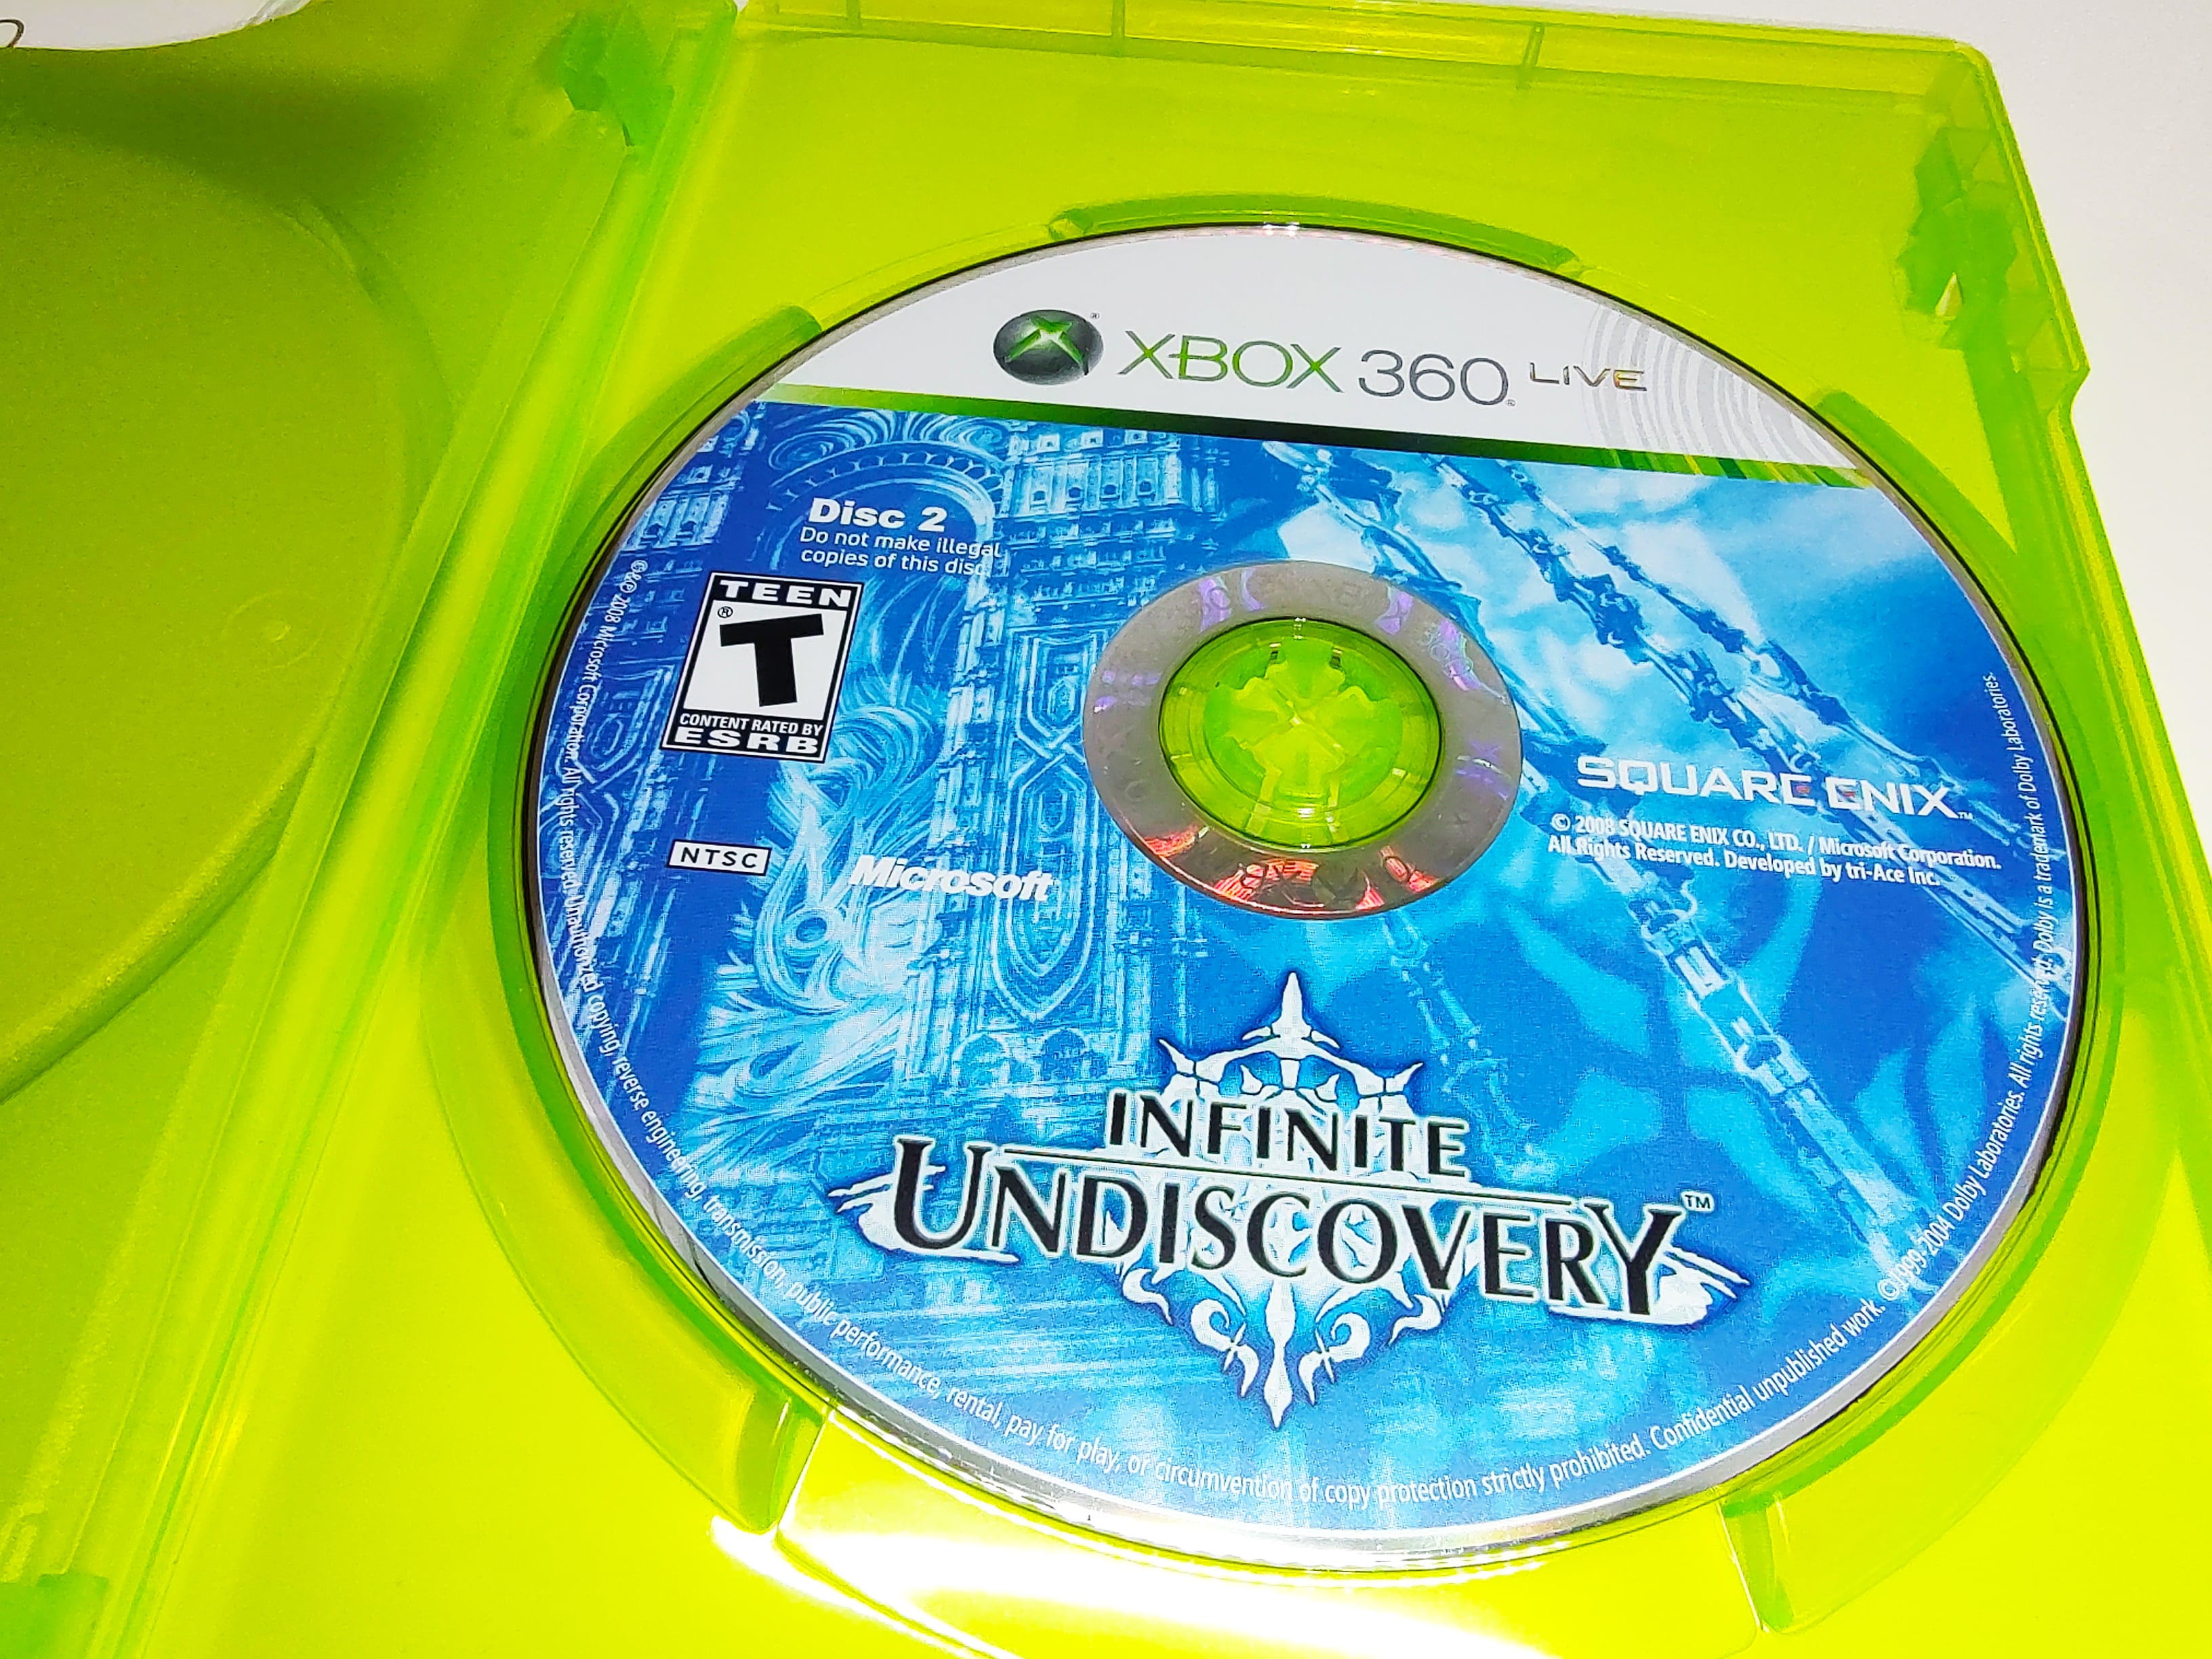 Infinite Undiscovery | Xbox 360 | Disc 2